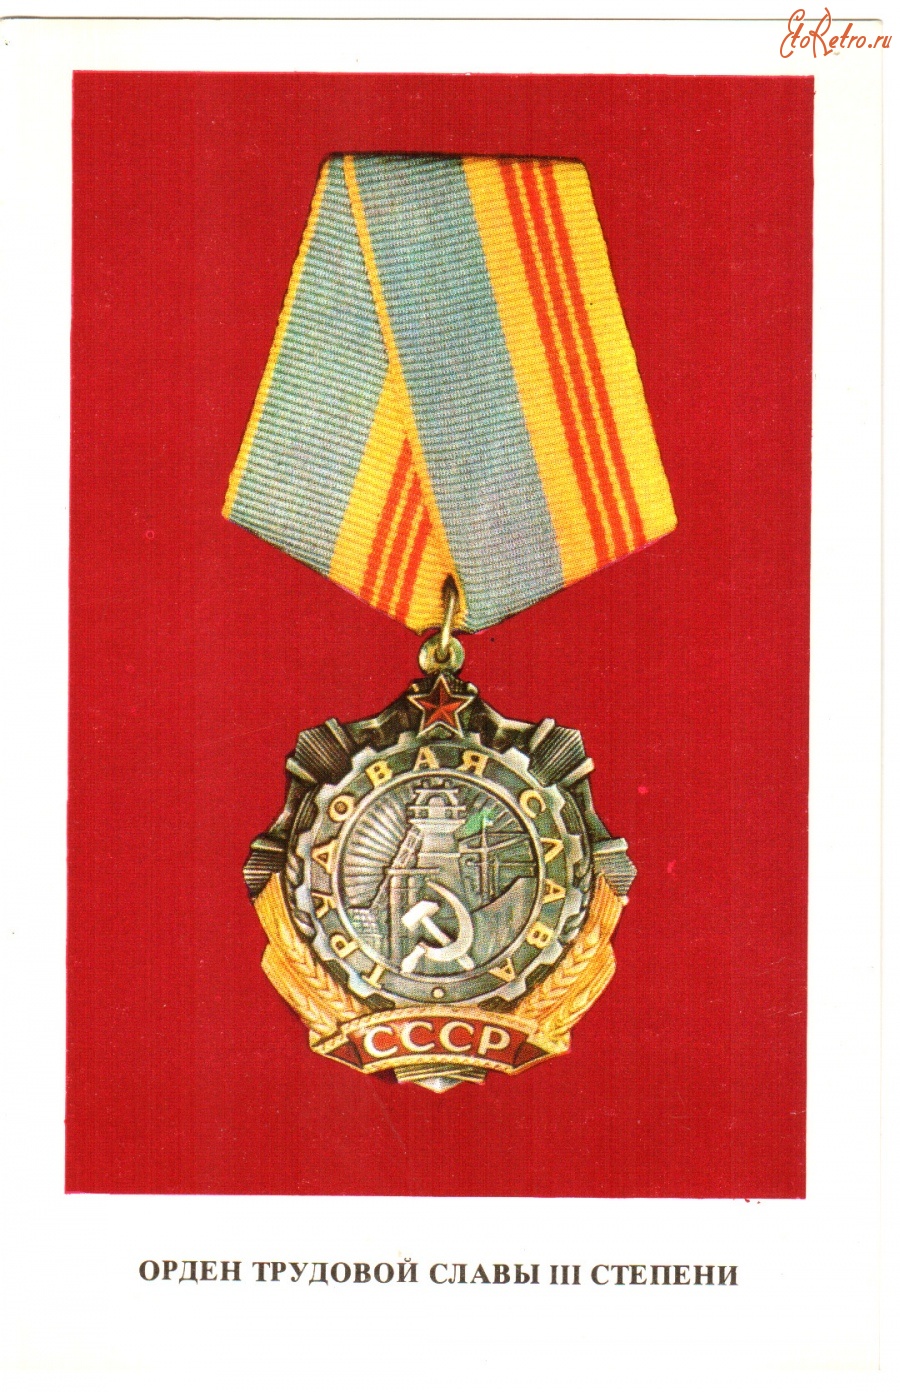 Ретро открытки - Орден Трудовой славы III степени